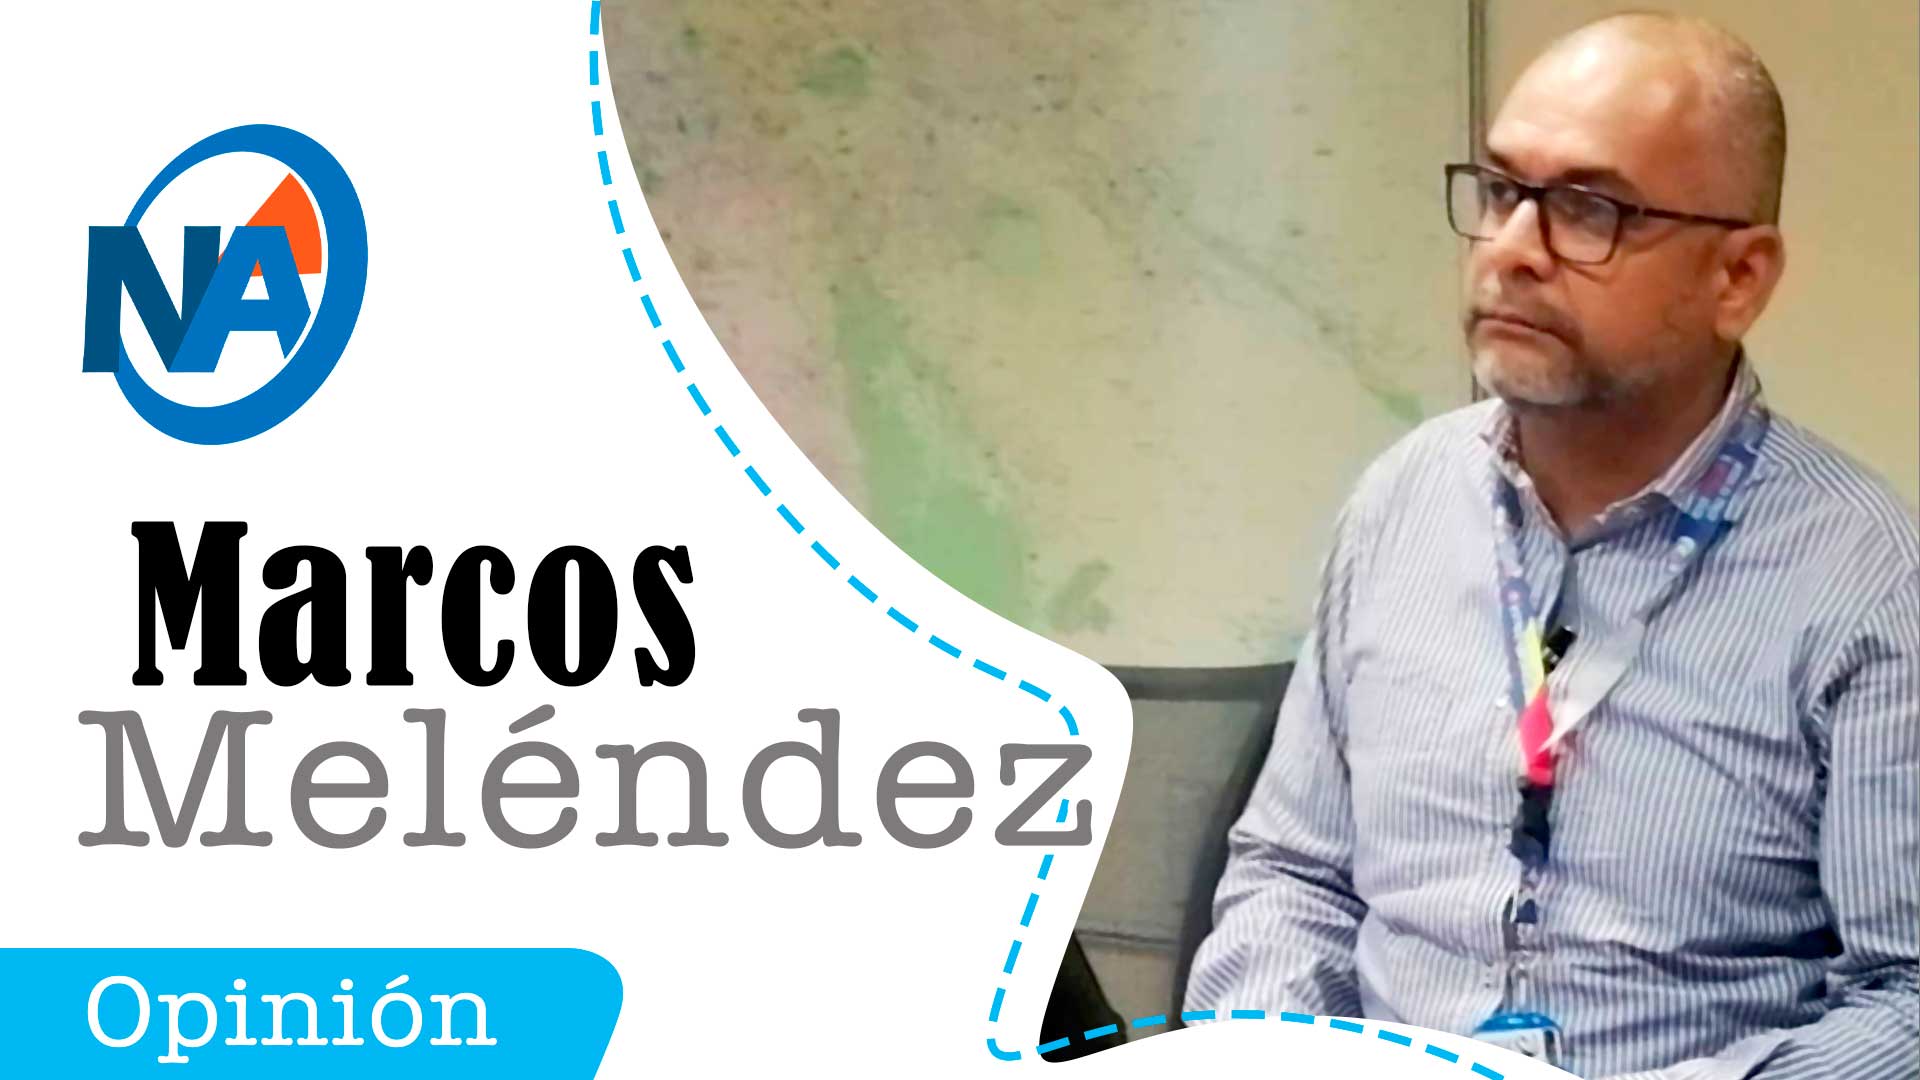 Marcos Melendez - Noticias Ahora